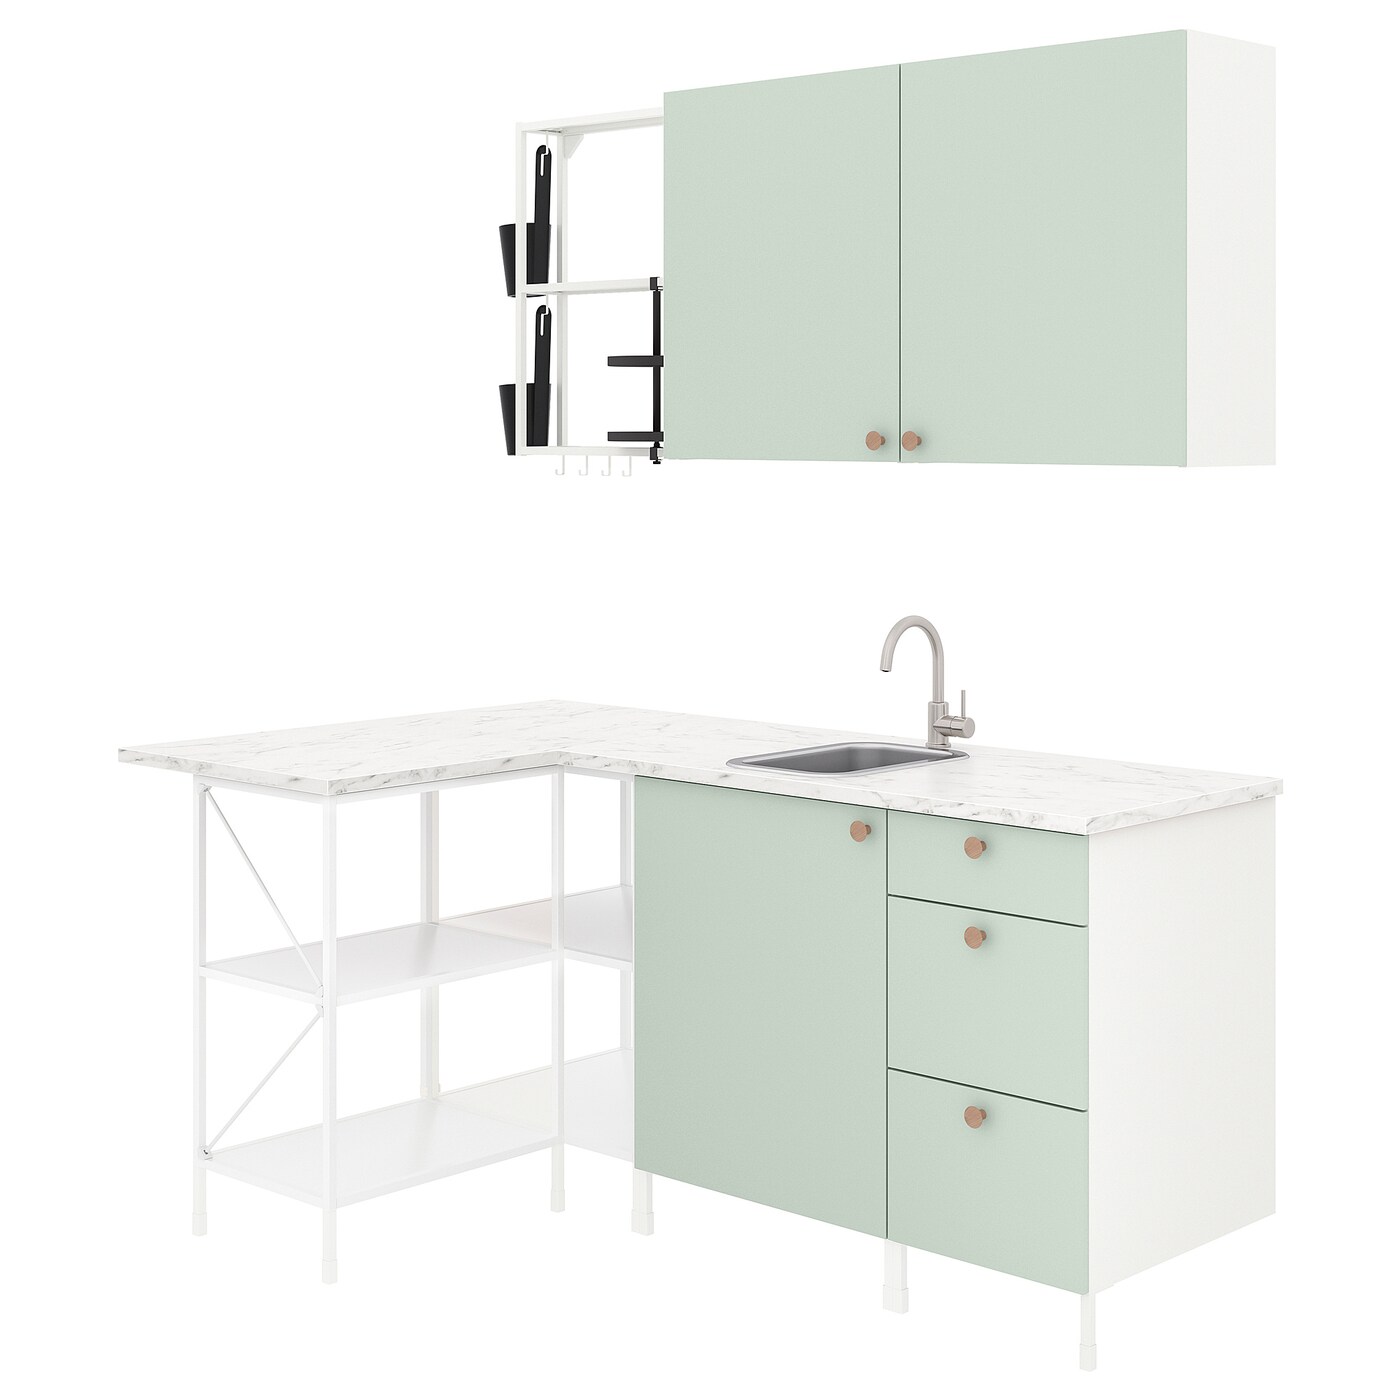 Угловая кухня -  ENHET  IKEA/ ЭНХЕТ ИКЕА, 185х75 см, белый/зеленый